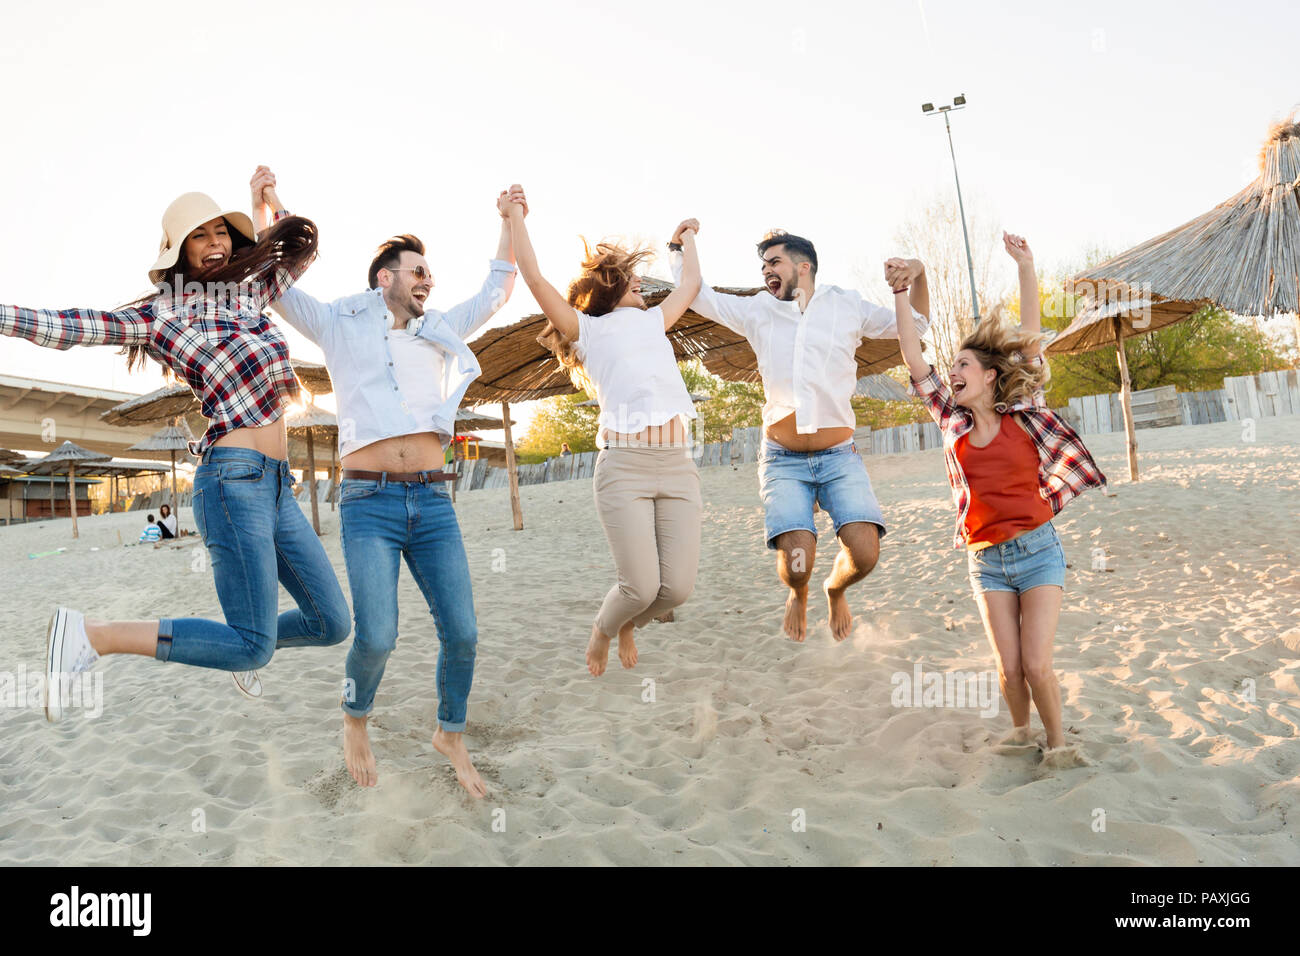 Gruppe von Freunden am Strand Spaß haben Stockfoto